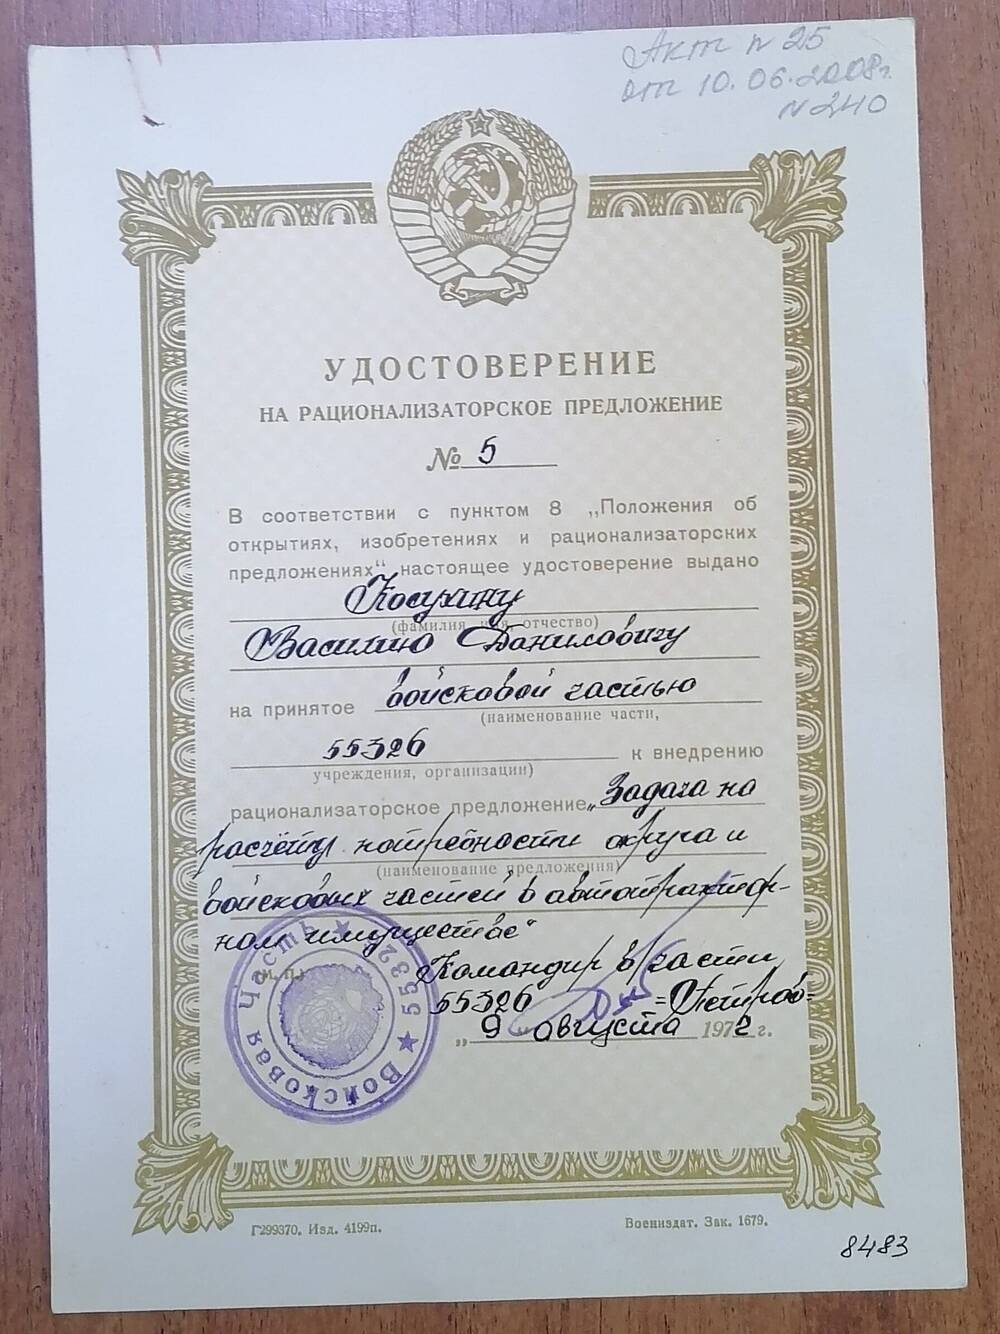 Удостоверение на рационализаторское предложение № 5 Косухина Василия Даниловича